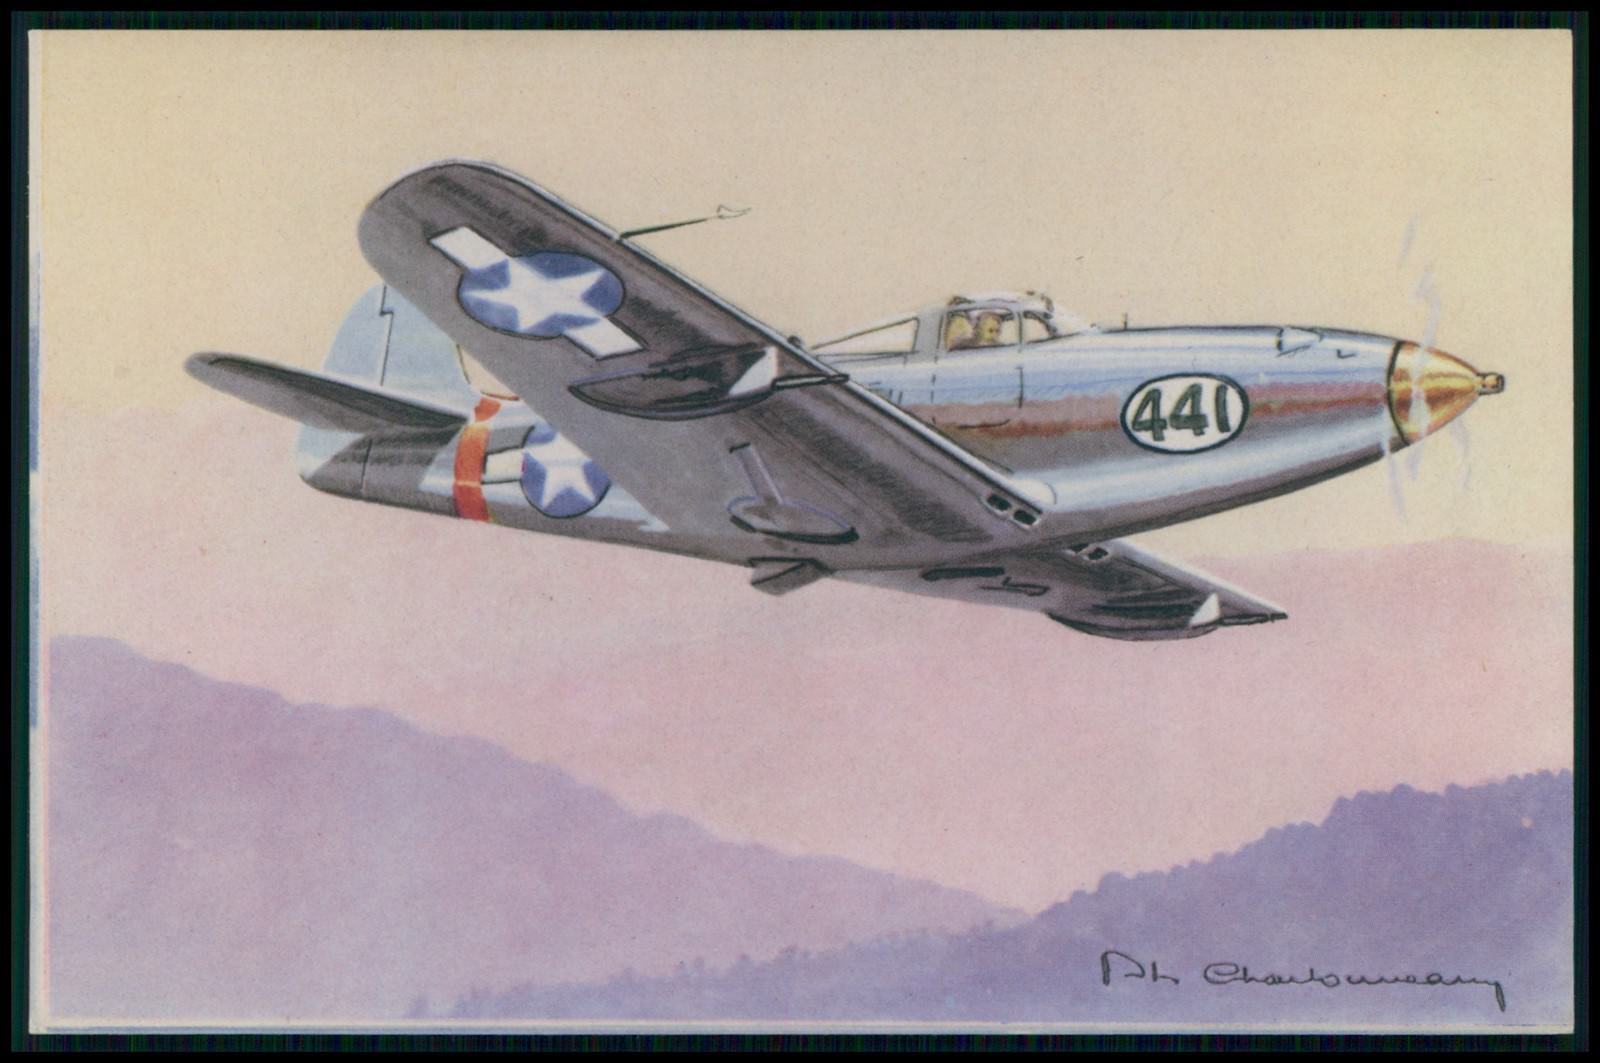 art Chardonneau Bell Aircobra Airplane WWII ww2 war original 1940s postcard